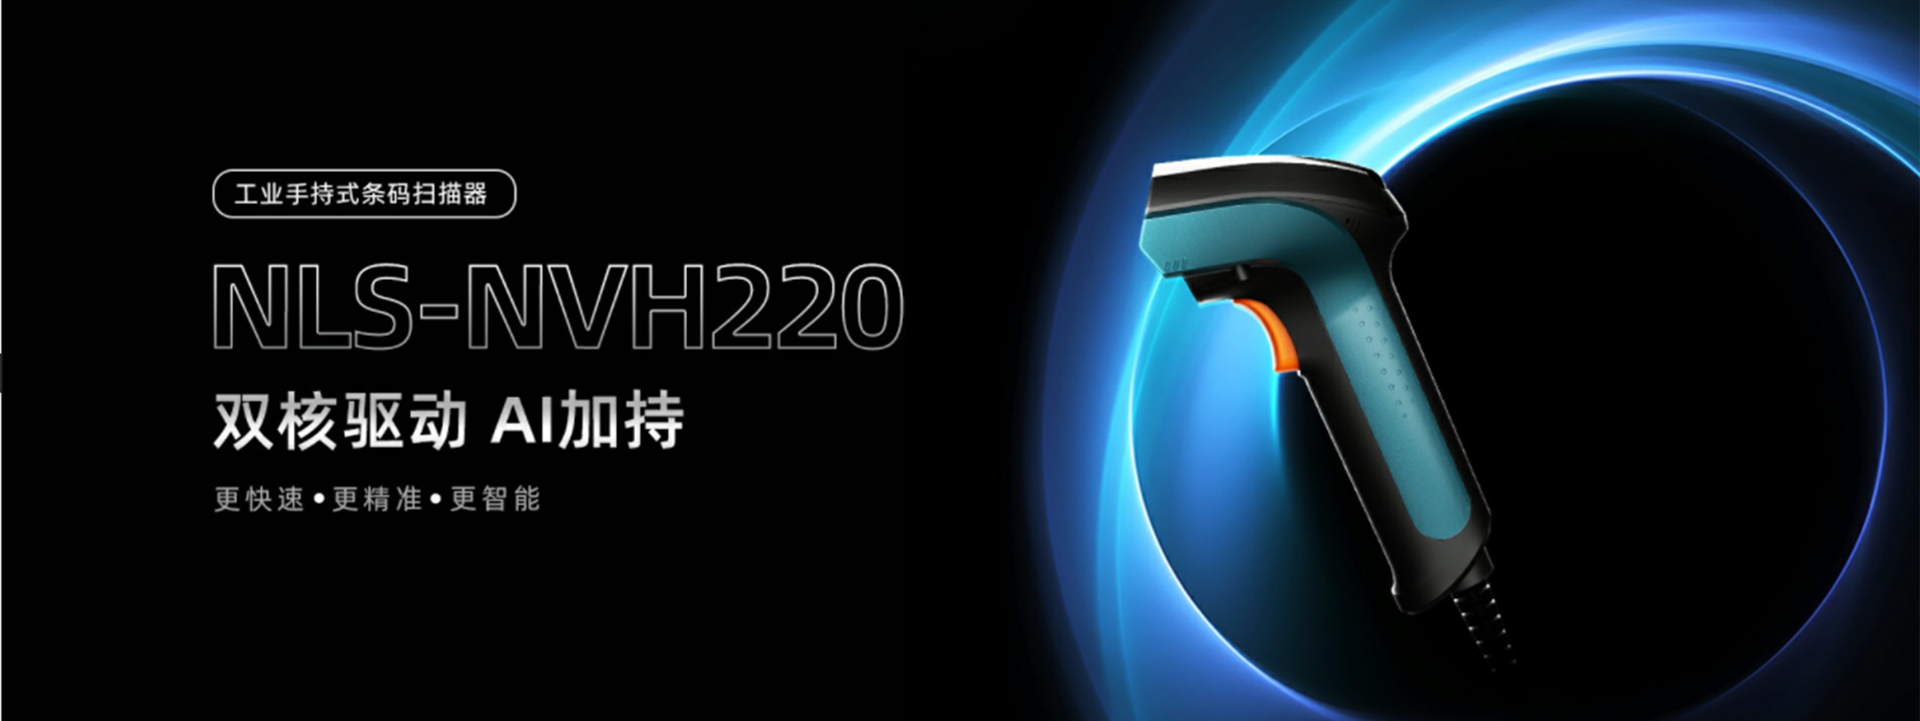 新大陆NLS-NVH220工业扫码枪